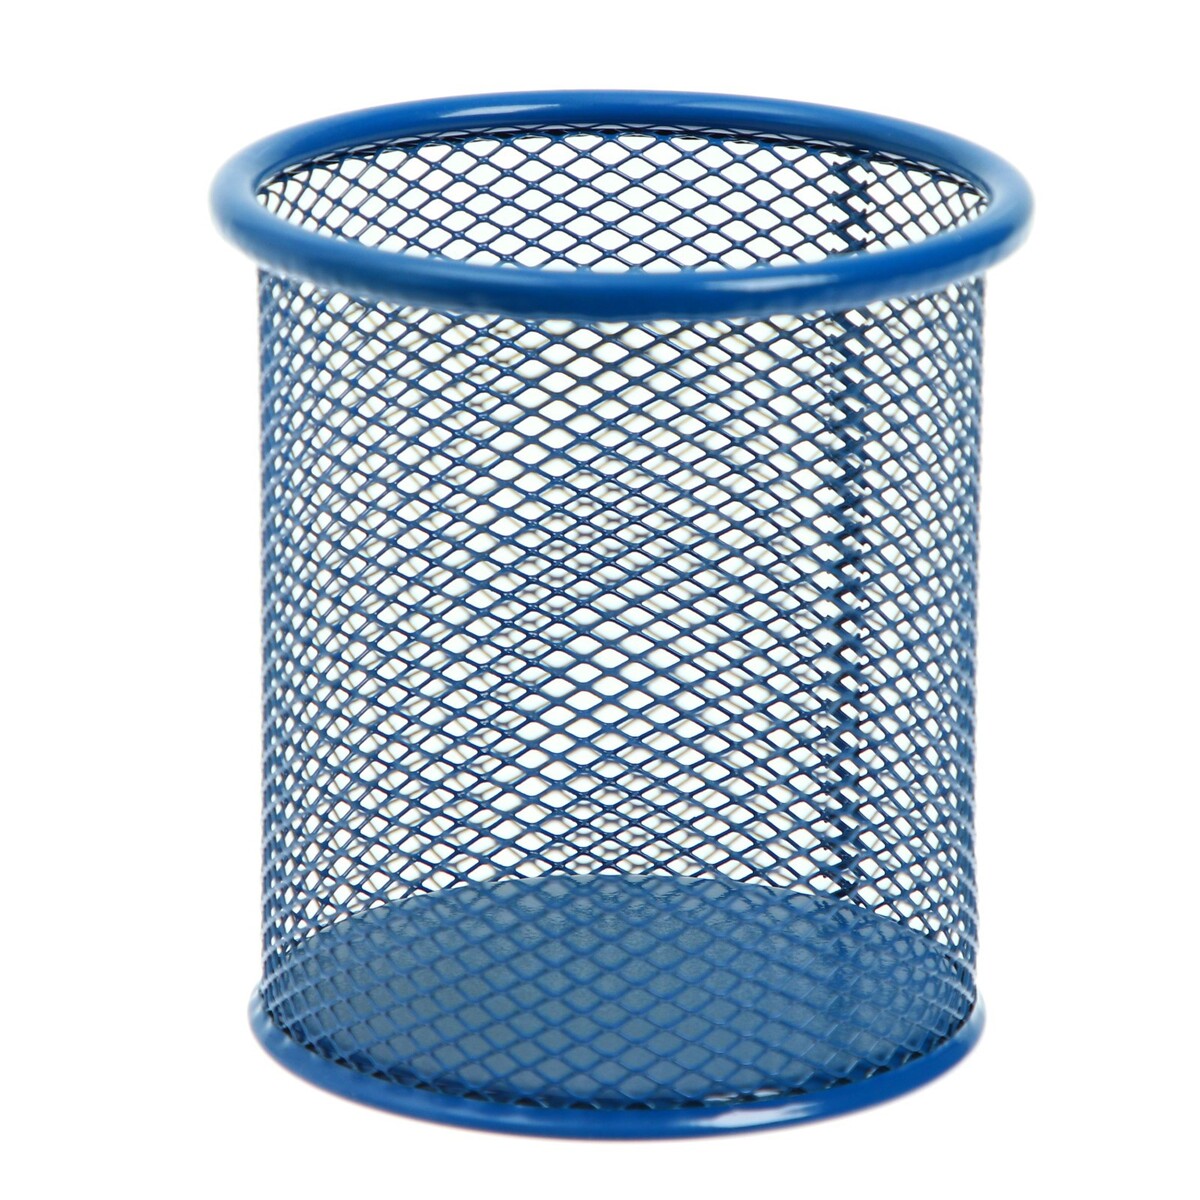 Стакан для пишущих принадлежностей круглый, металлическая сетка, синий туалет средний с сеткой 36 х 26 х 6 5 см лоток синий сетка белая